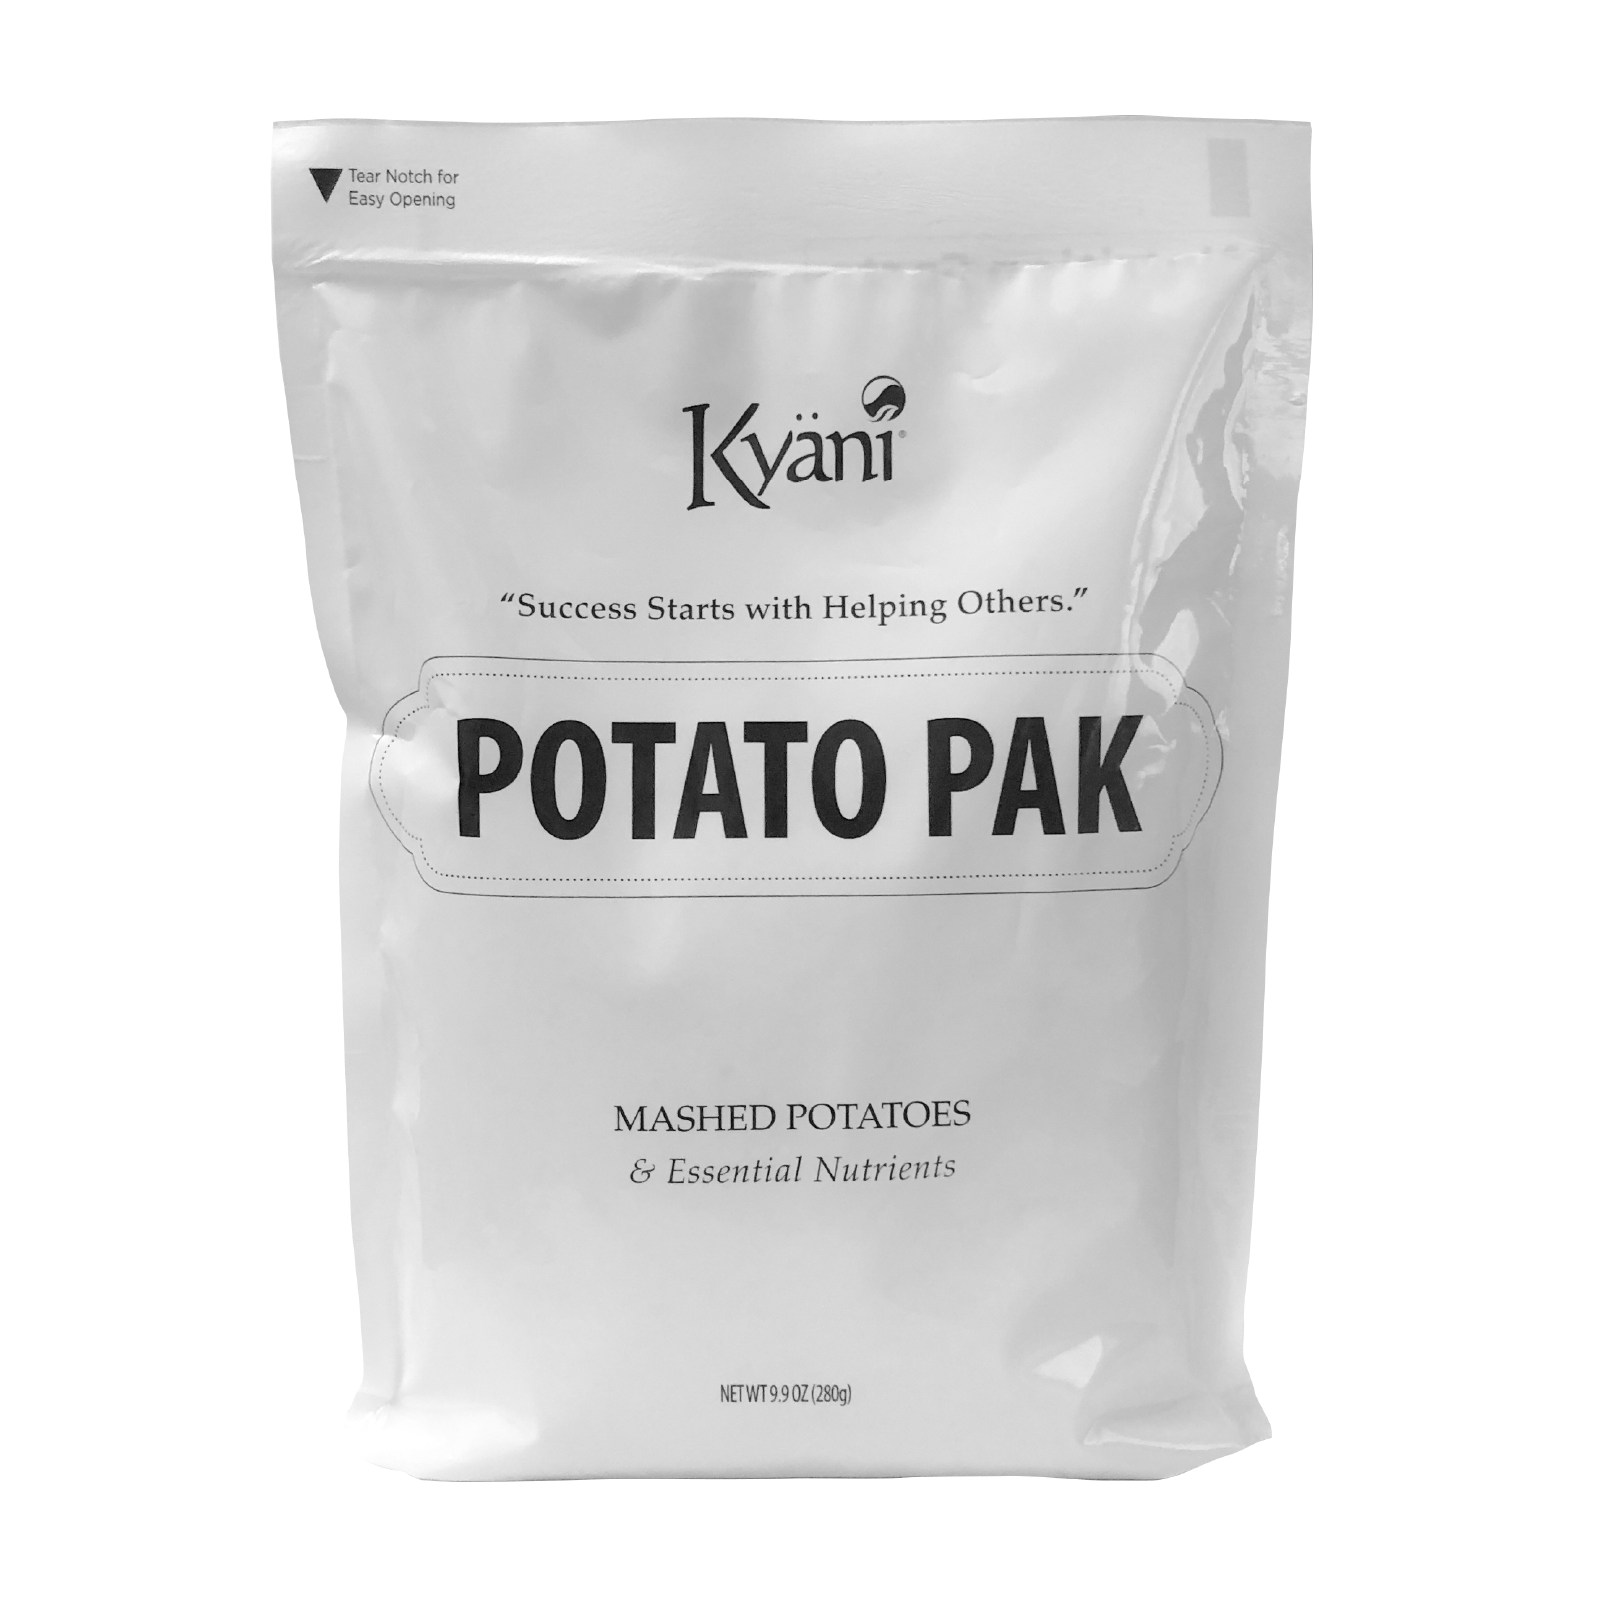 Potato Paks